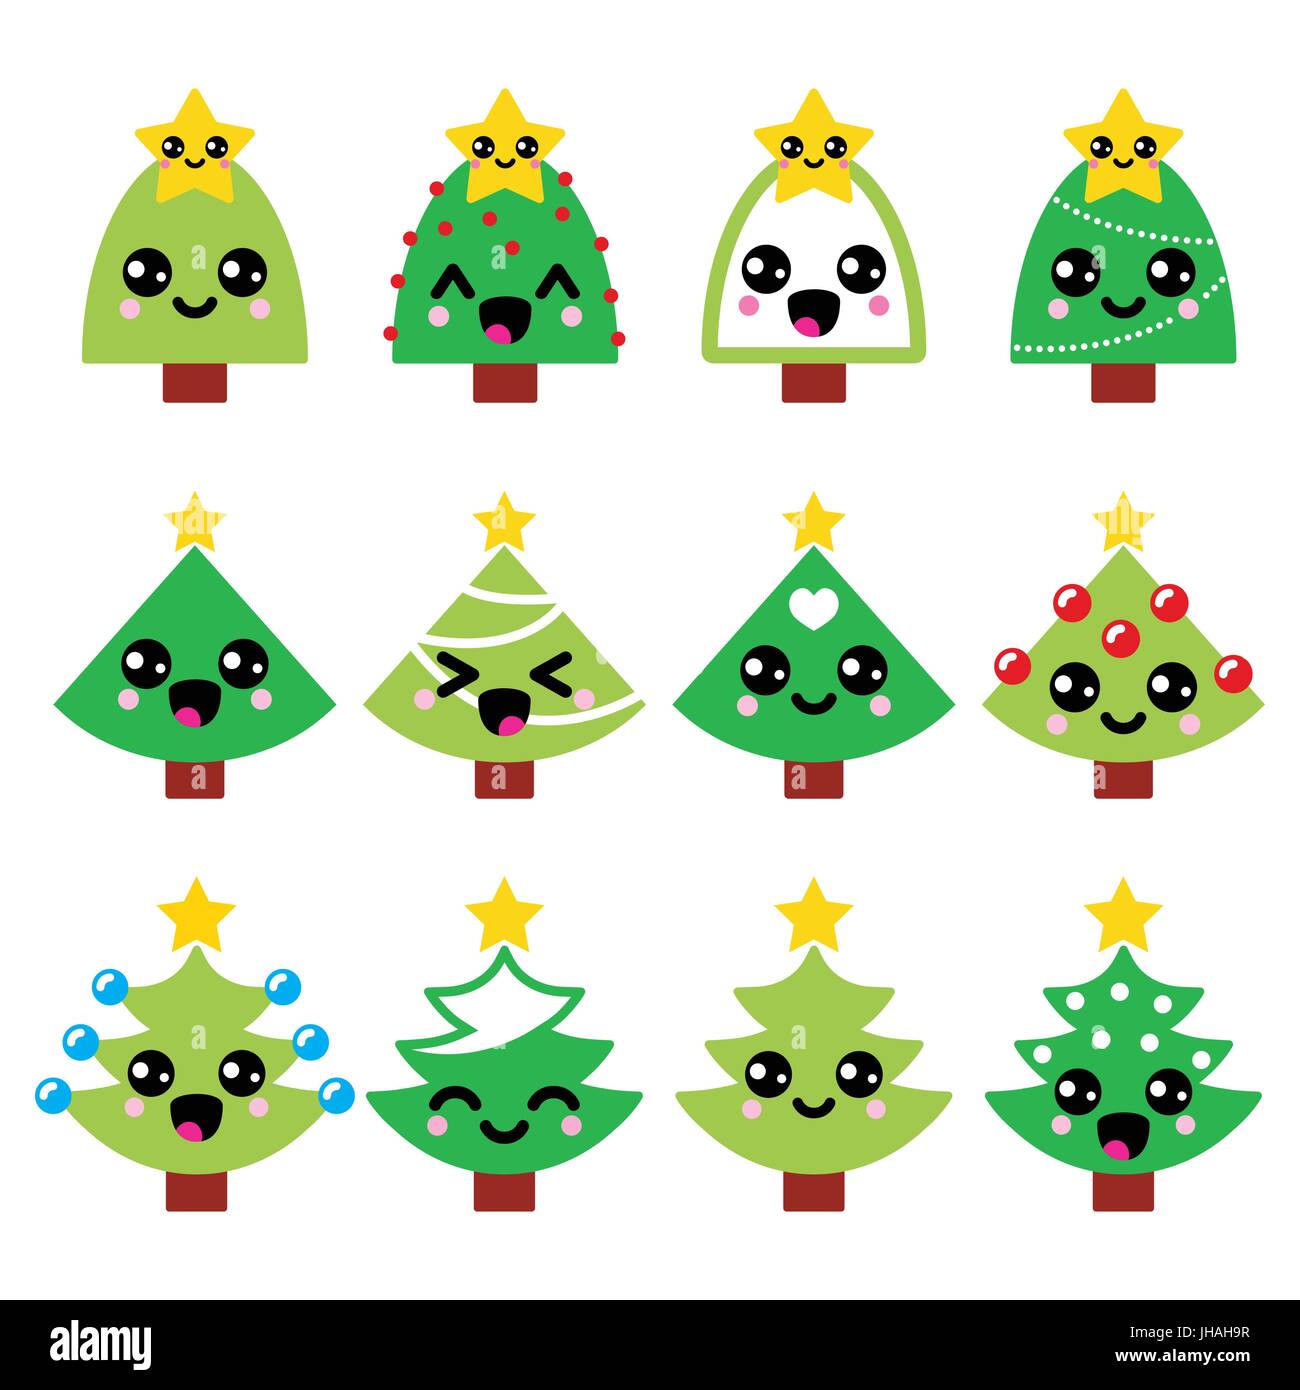 Disegni Di Natale Kawaii.Carino Kawaii Natale Albero Verde Con Stella Vettore Set Di Icone Immagine E Vettoriale Alamy